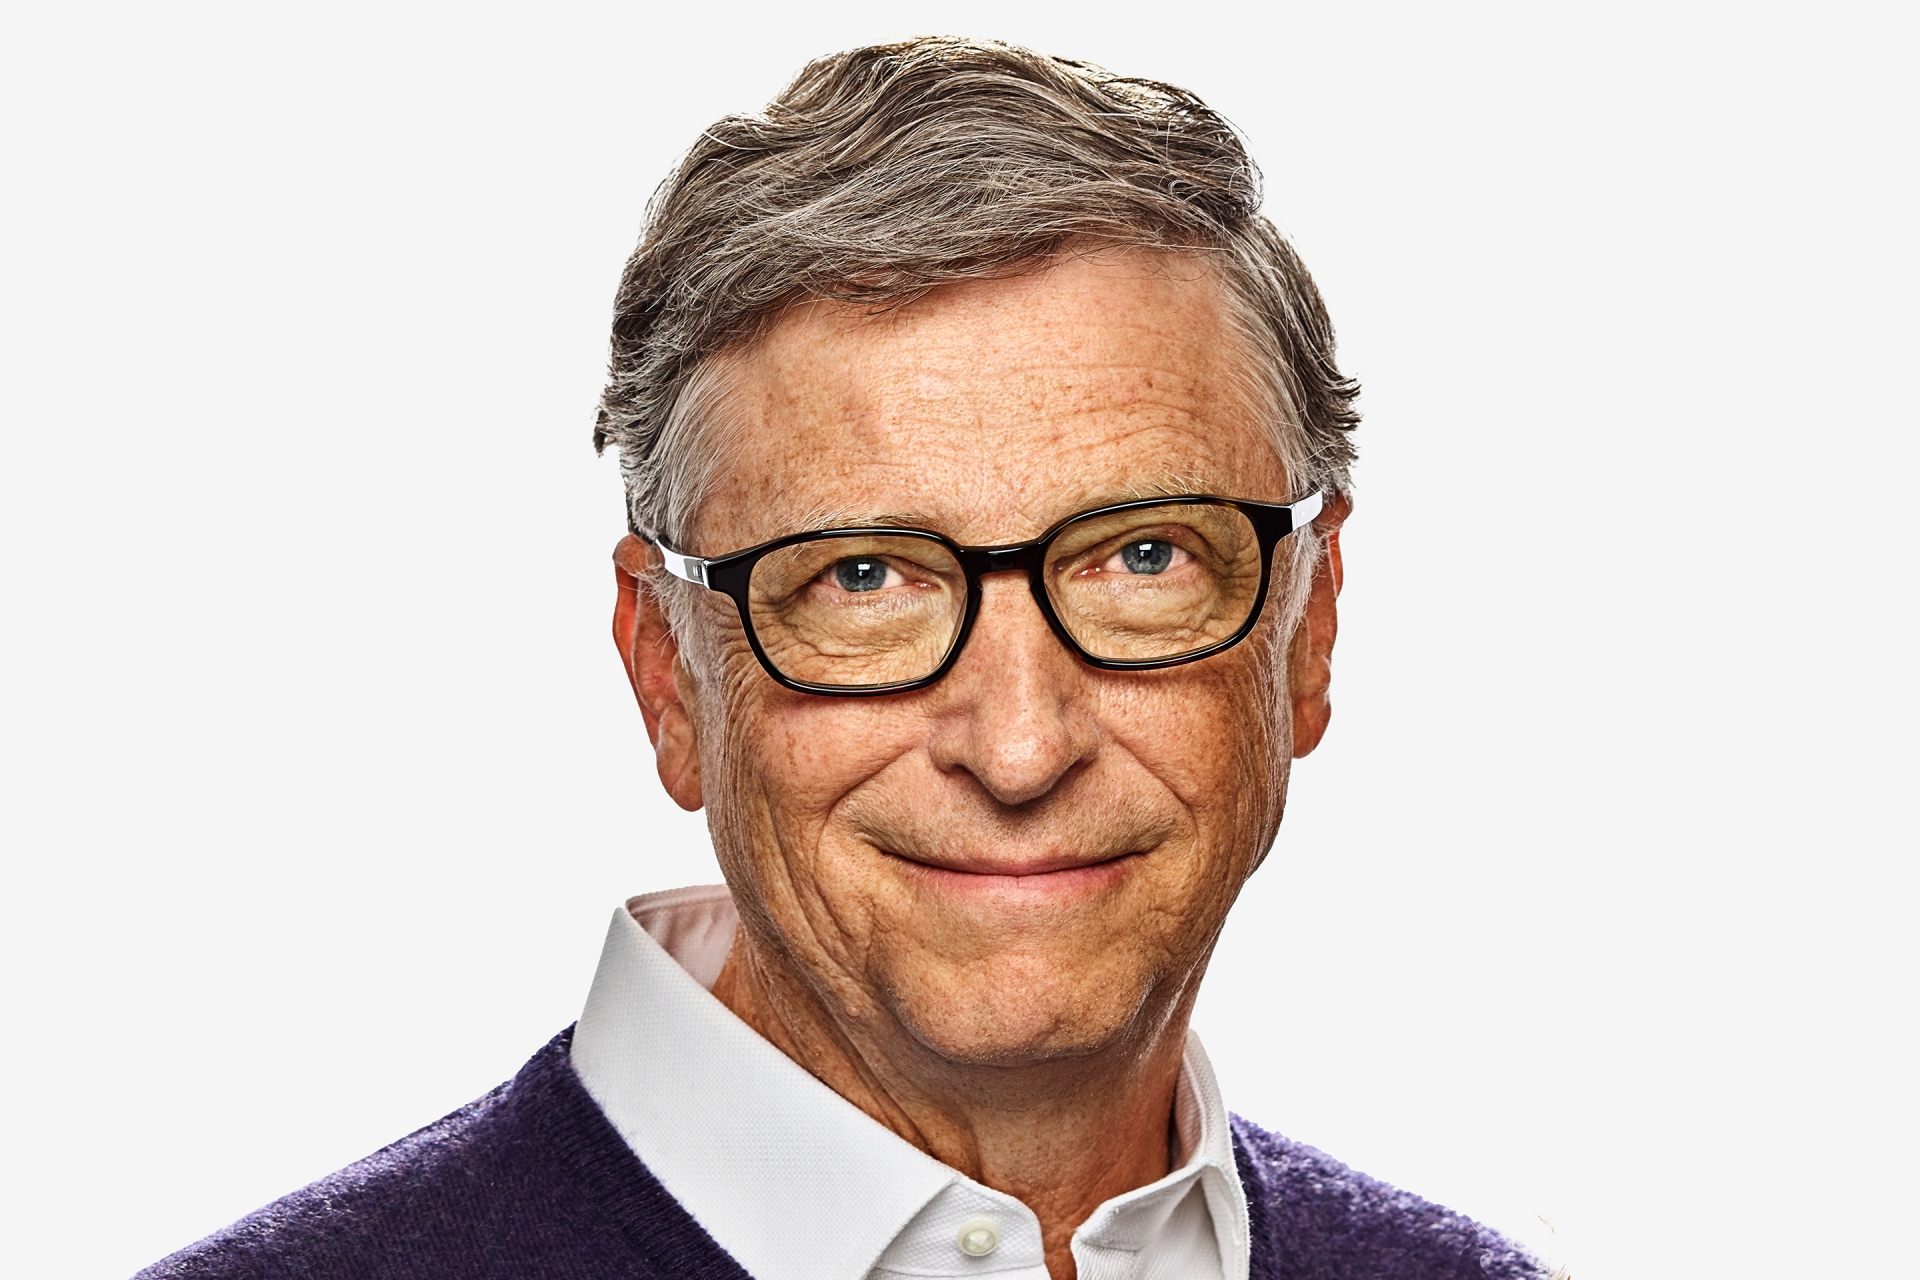 Bill Gates là hình mẫu của một tỉ phú vừa giàu có lại vừa có lòng nhân ái.